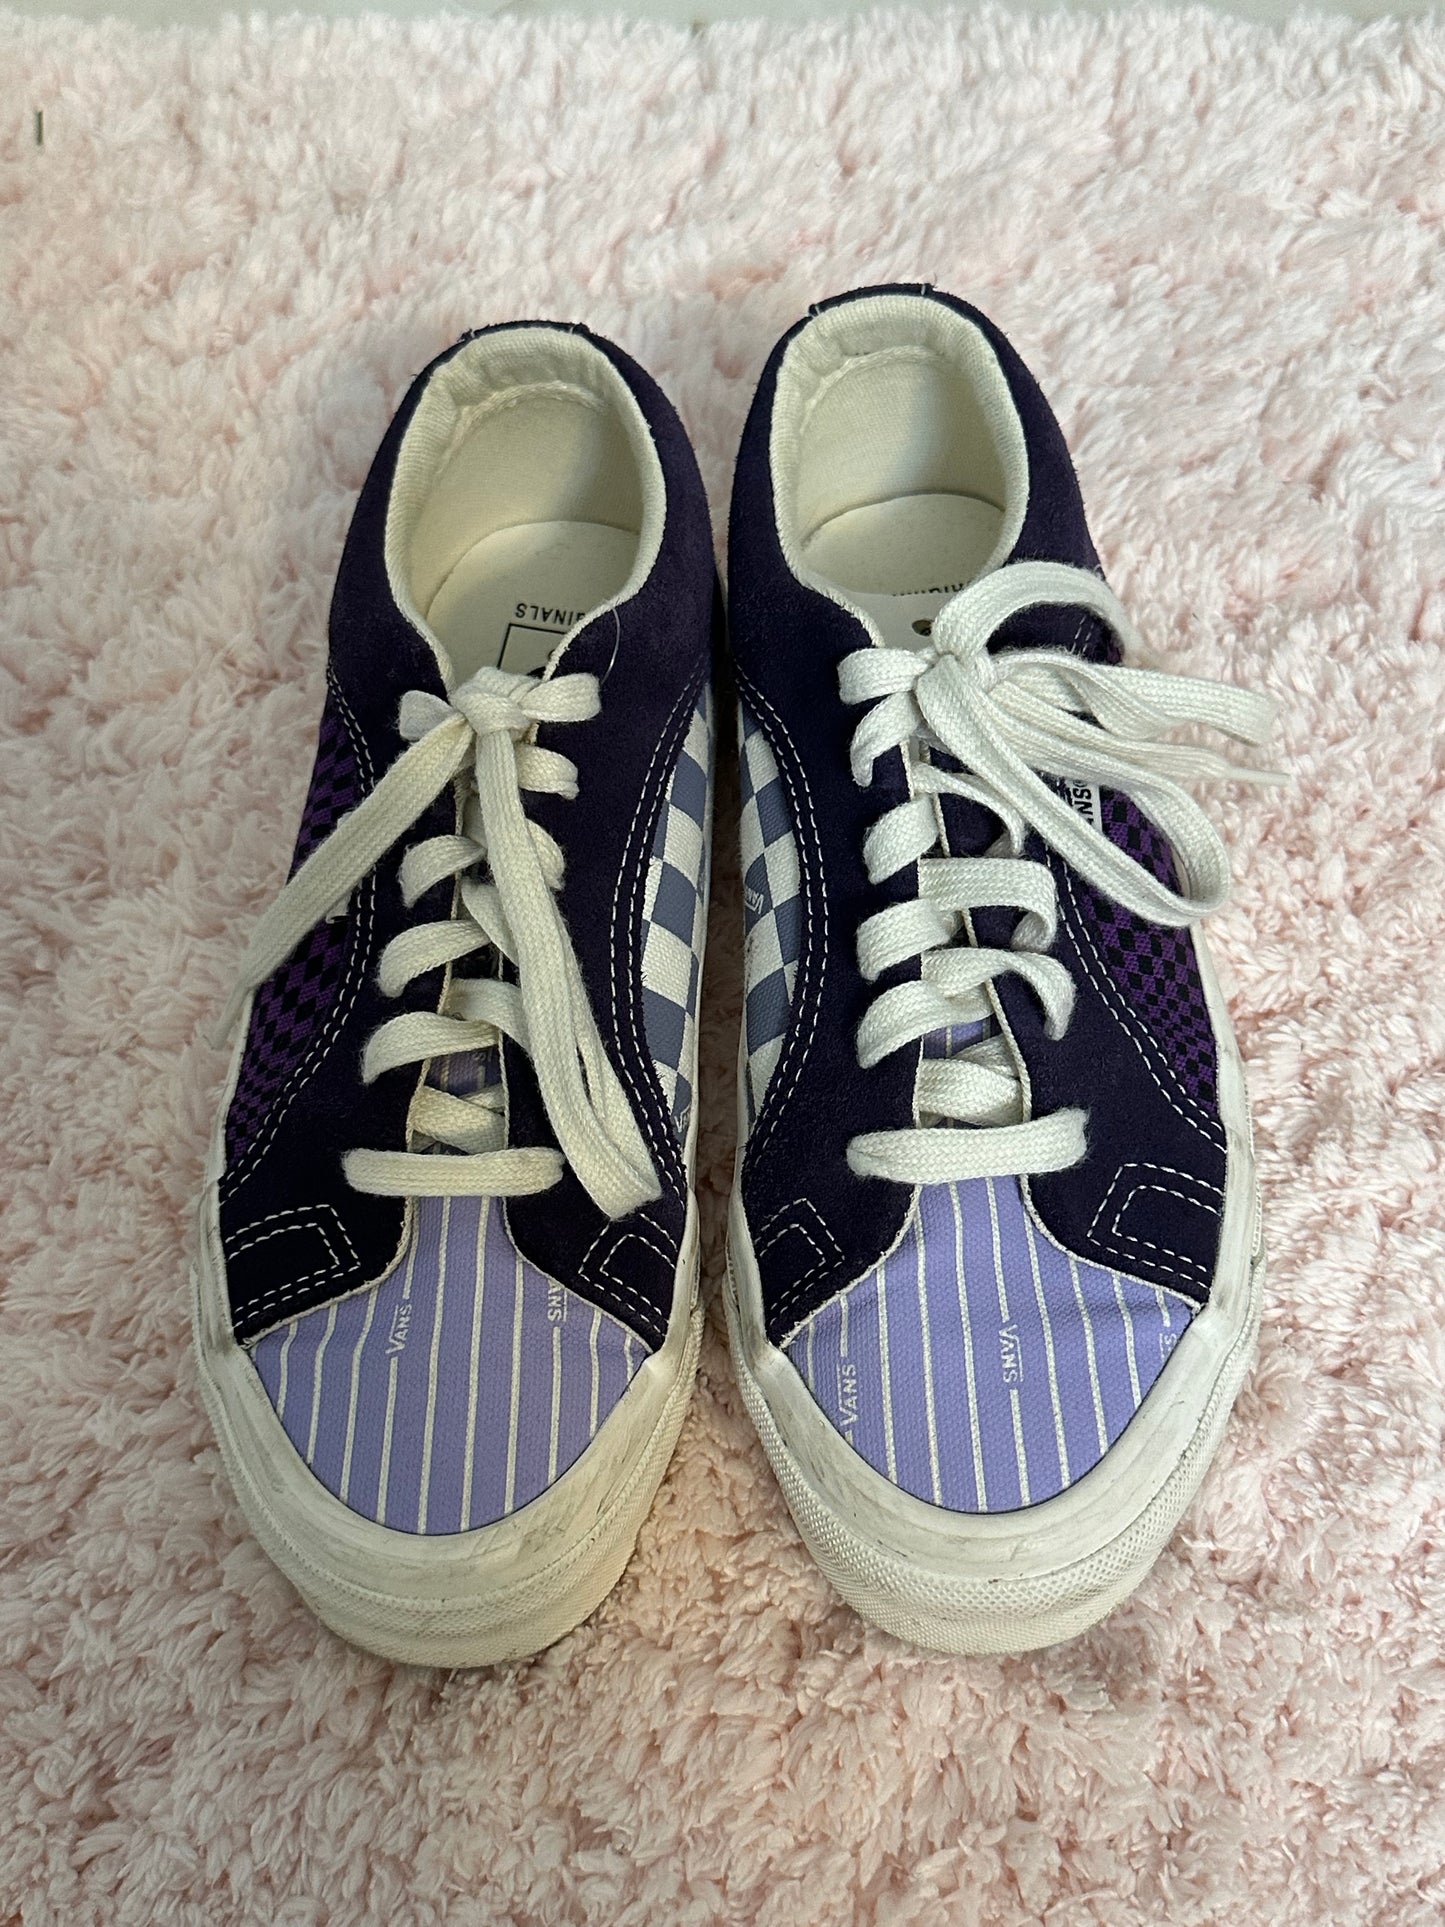 Women’s Vans Shoes Tennis Shoes Sz 6 Purple